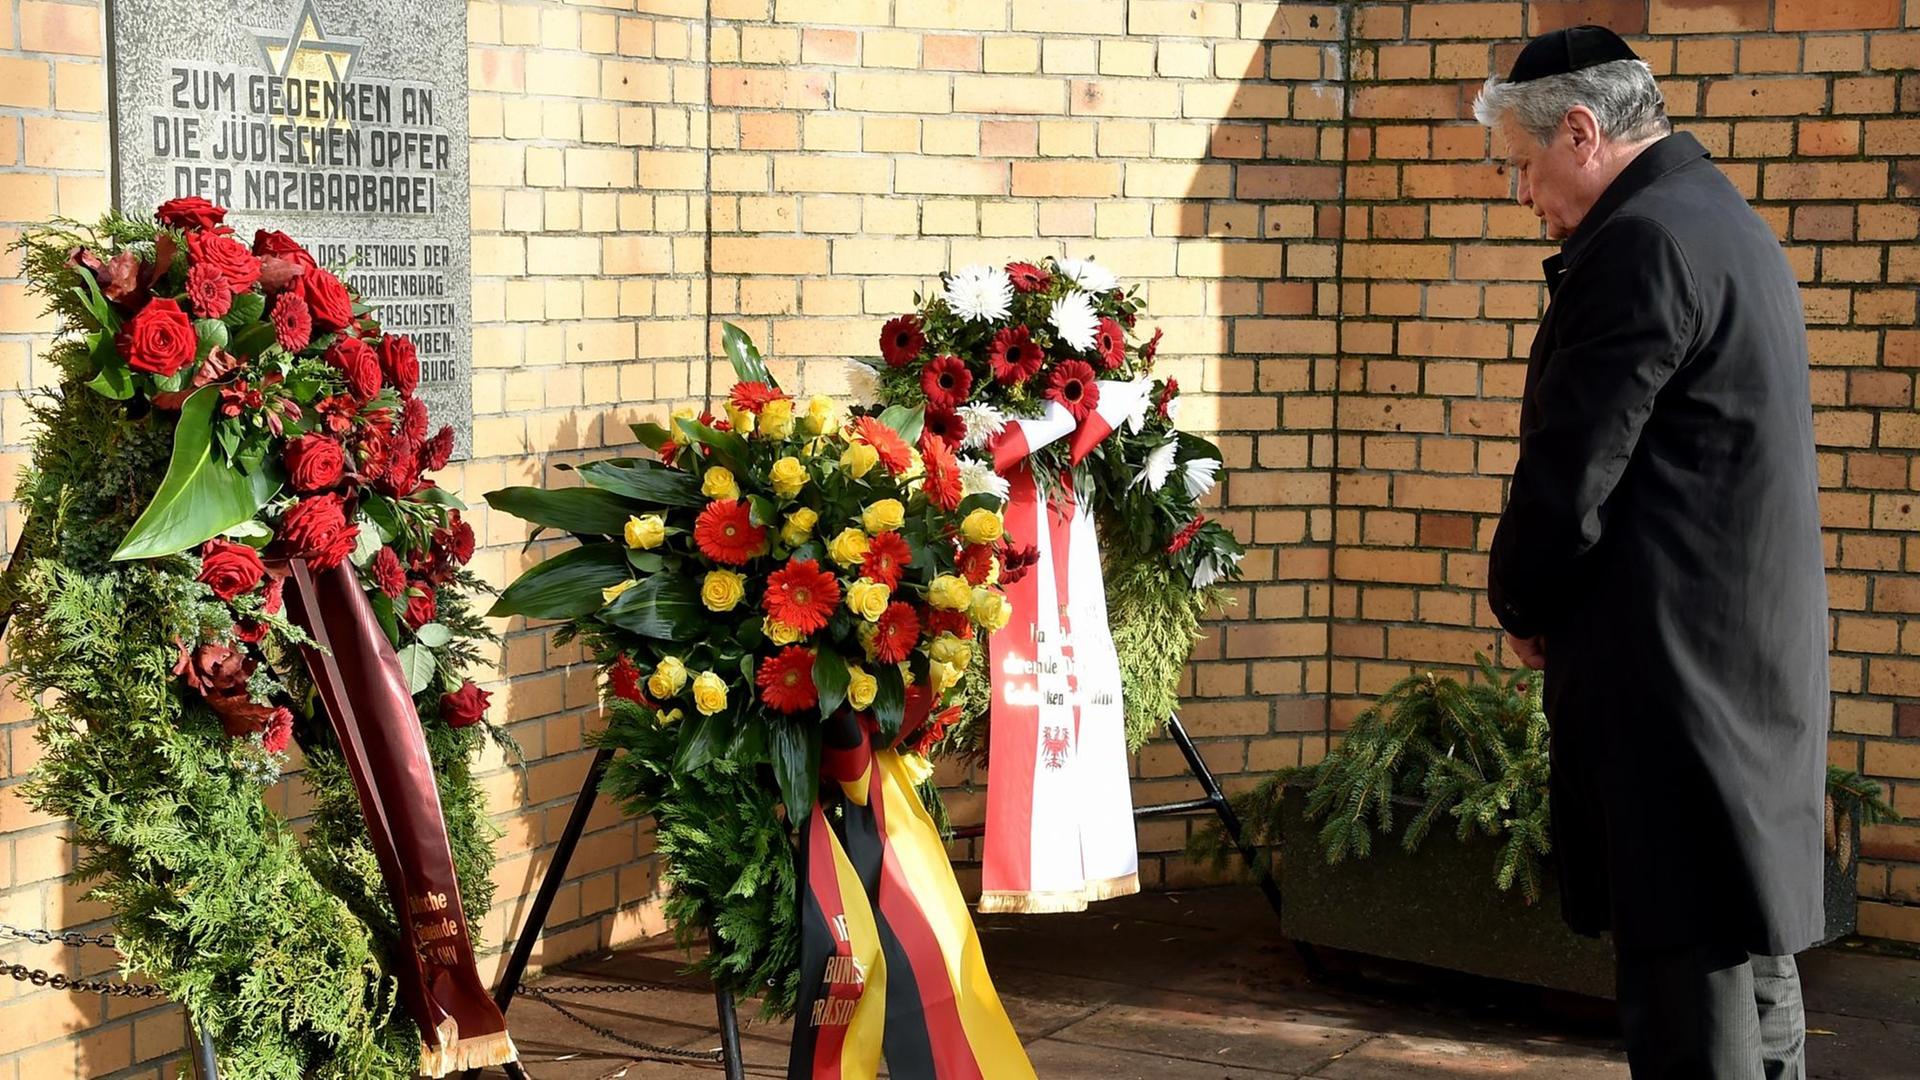 Bundespräsident Joachim Gauck legt in Oranienburg (Brandenburg) am Standort der ehemaligen Synagoge einen Kranz nieder - in Gedenken an die Opfer der Reichspogromnacht vor 77 Jahren.